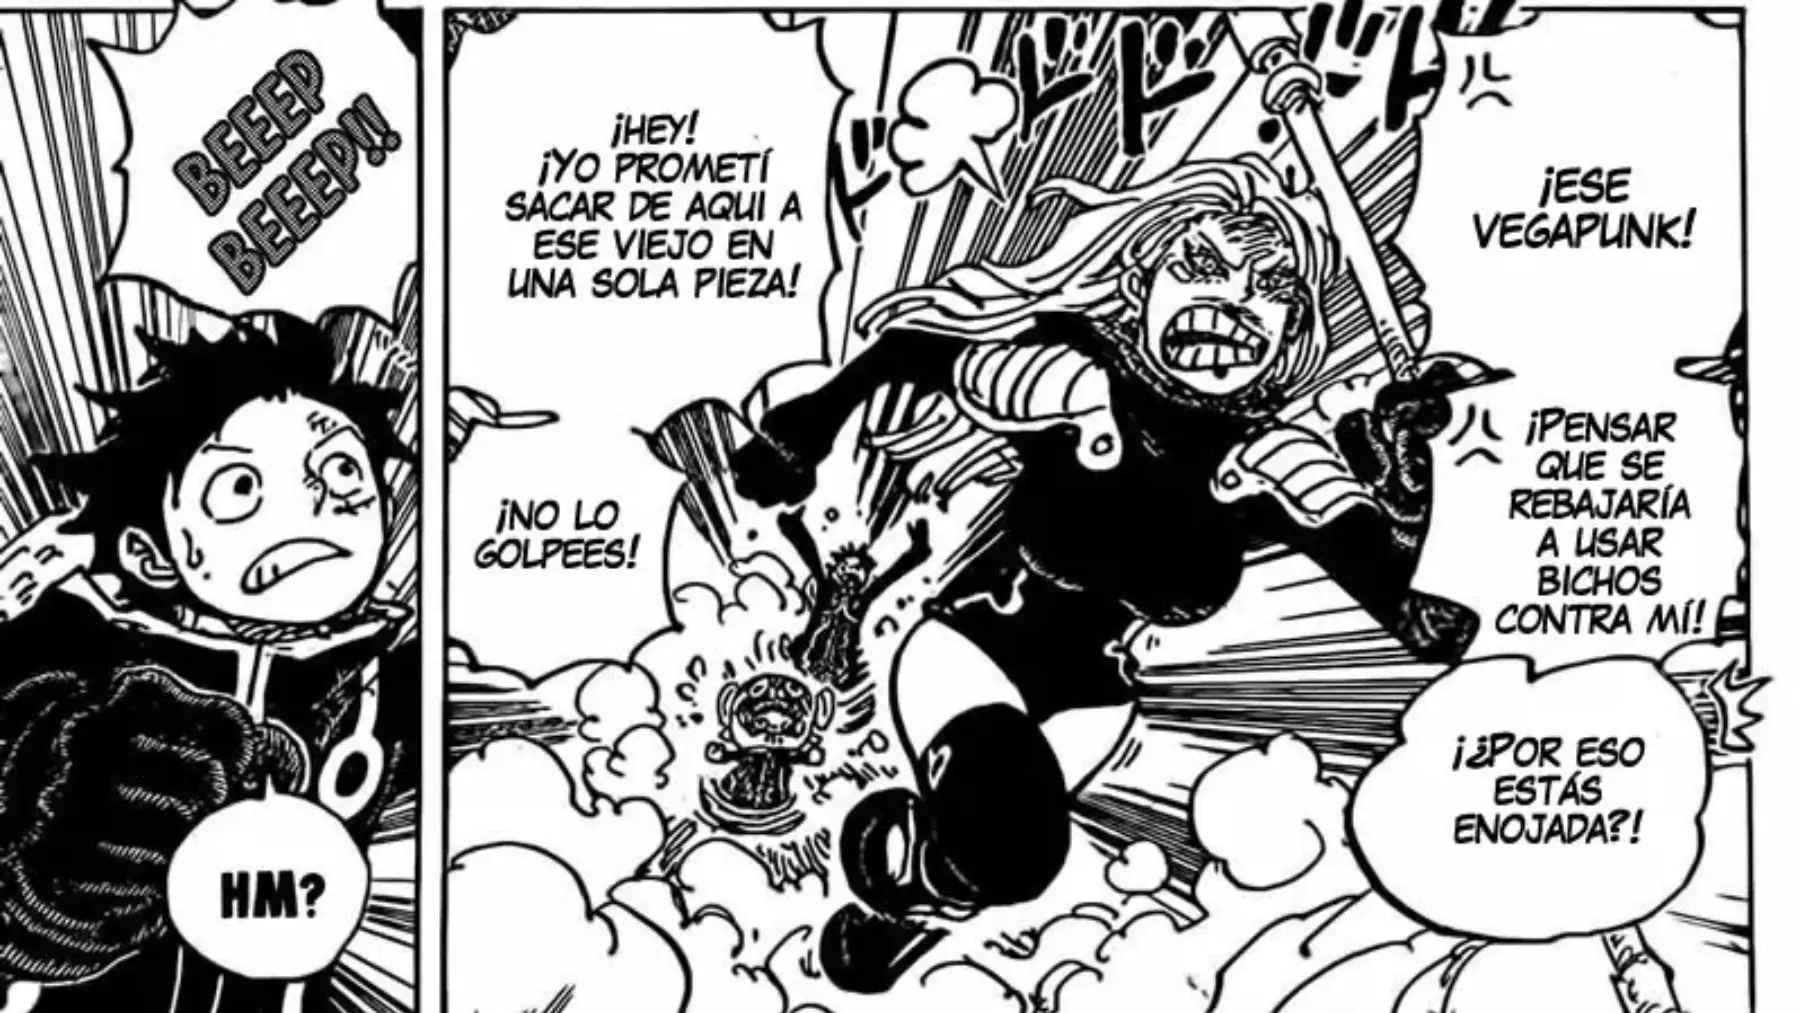 torre radical galería Manga One Piece 1071 en español titulado: "Un héroe aparece"